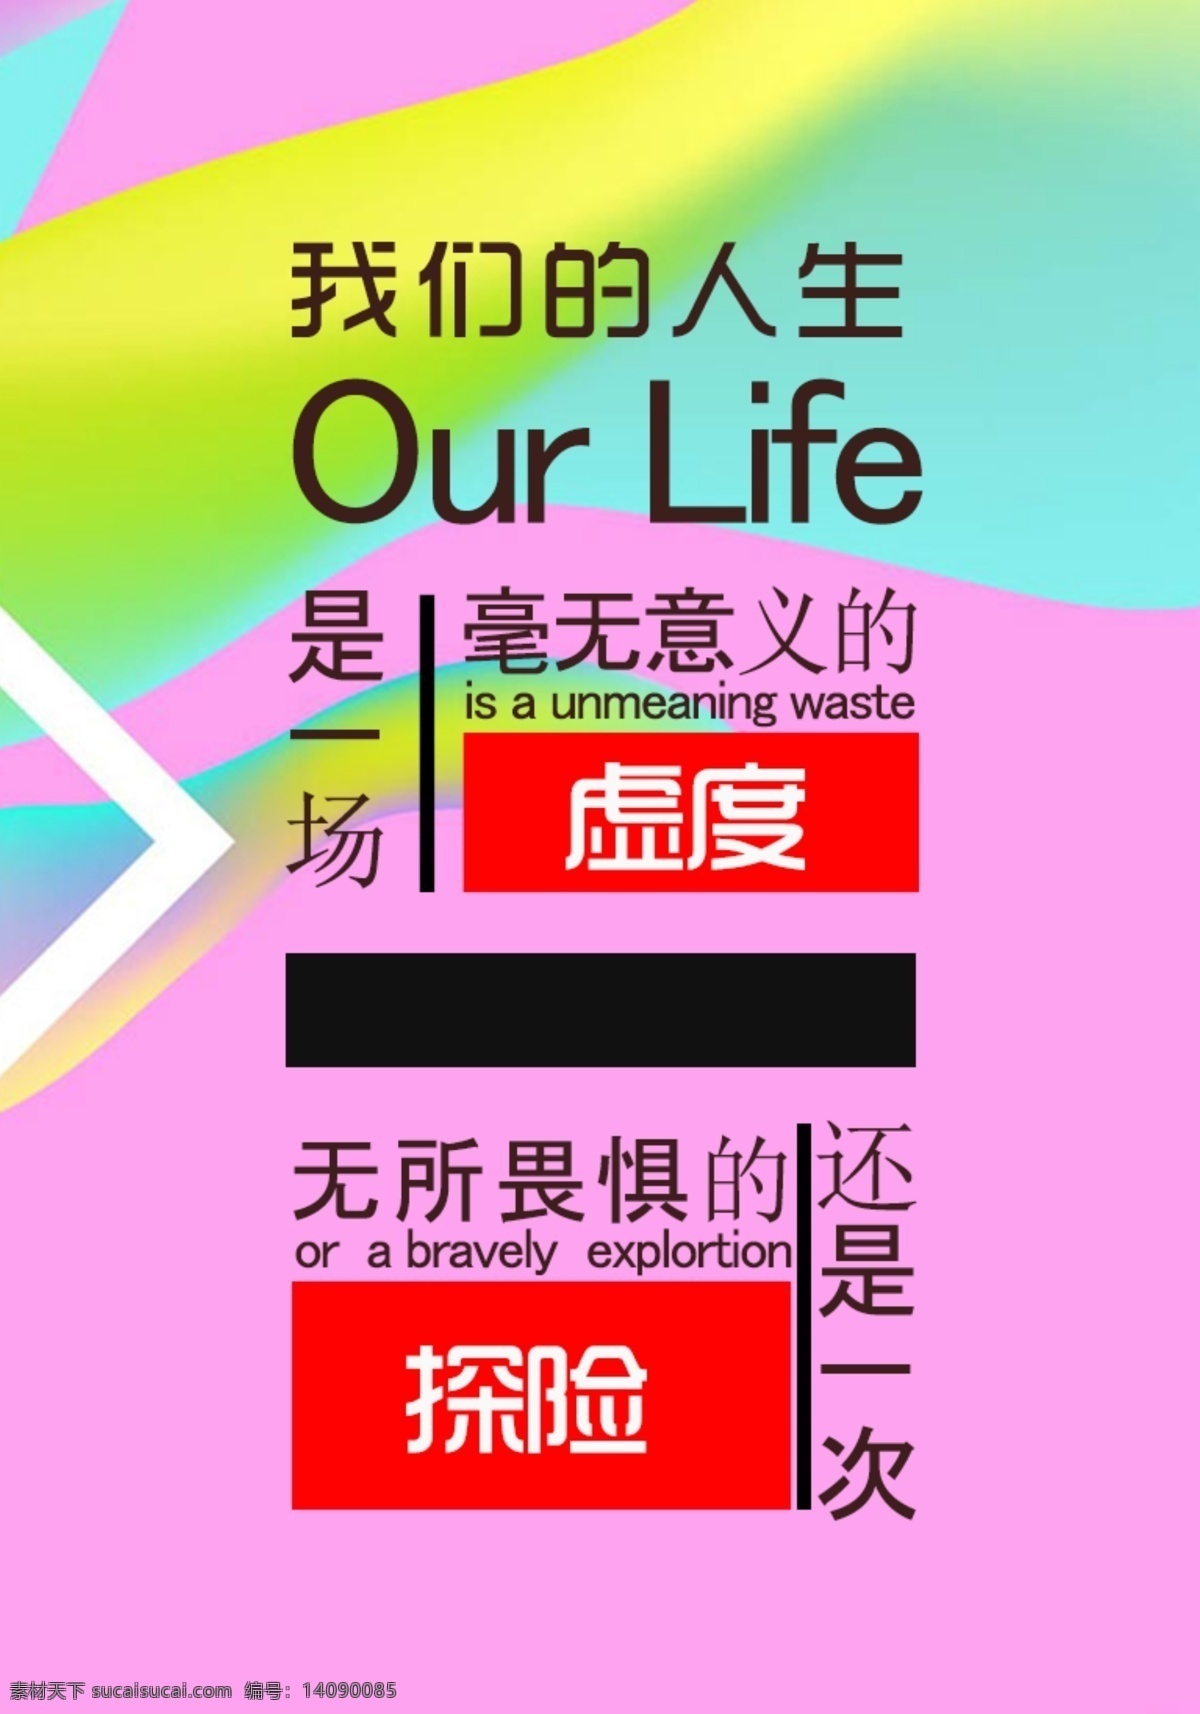 人生生活 字体排版 人生意义 色彩排版 排版设计 排版